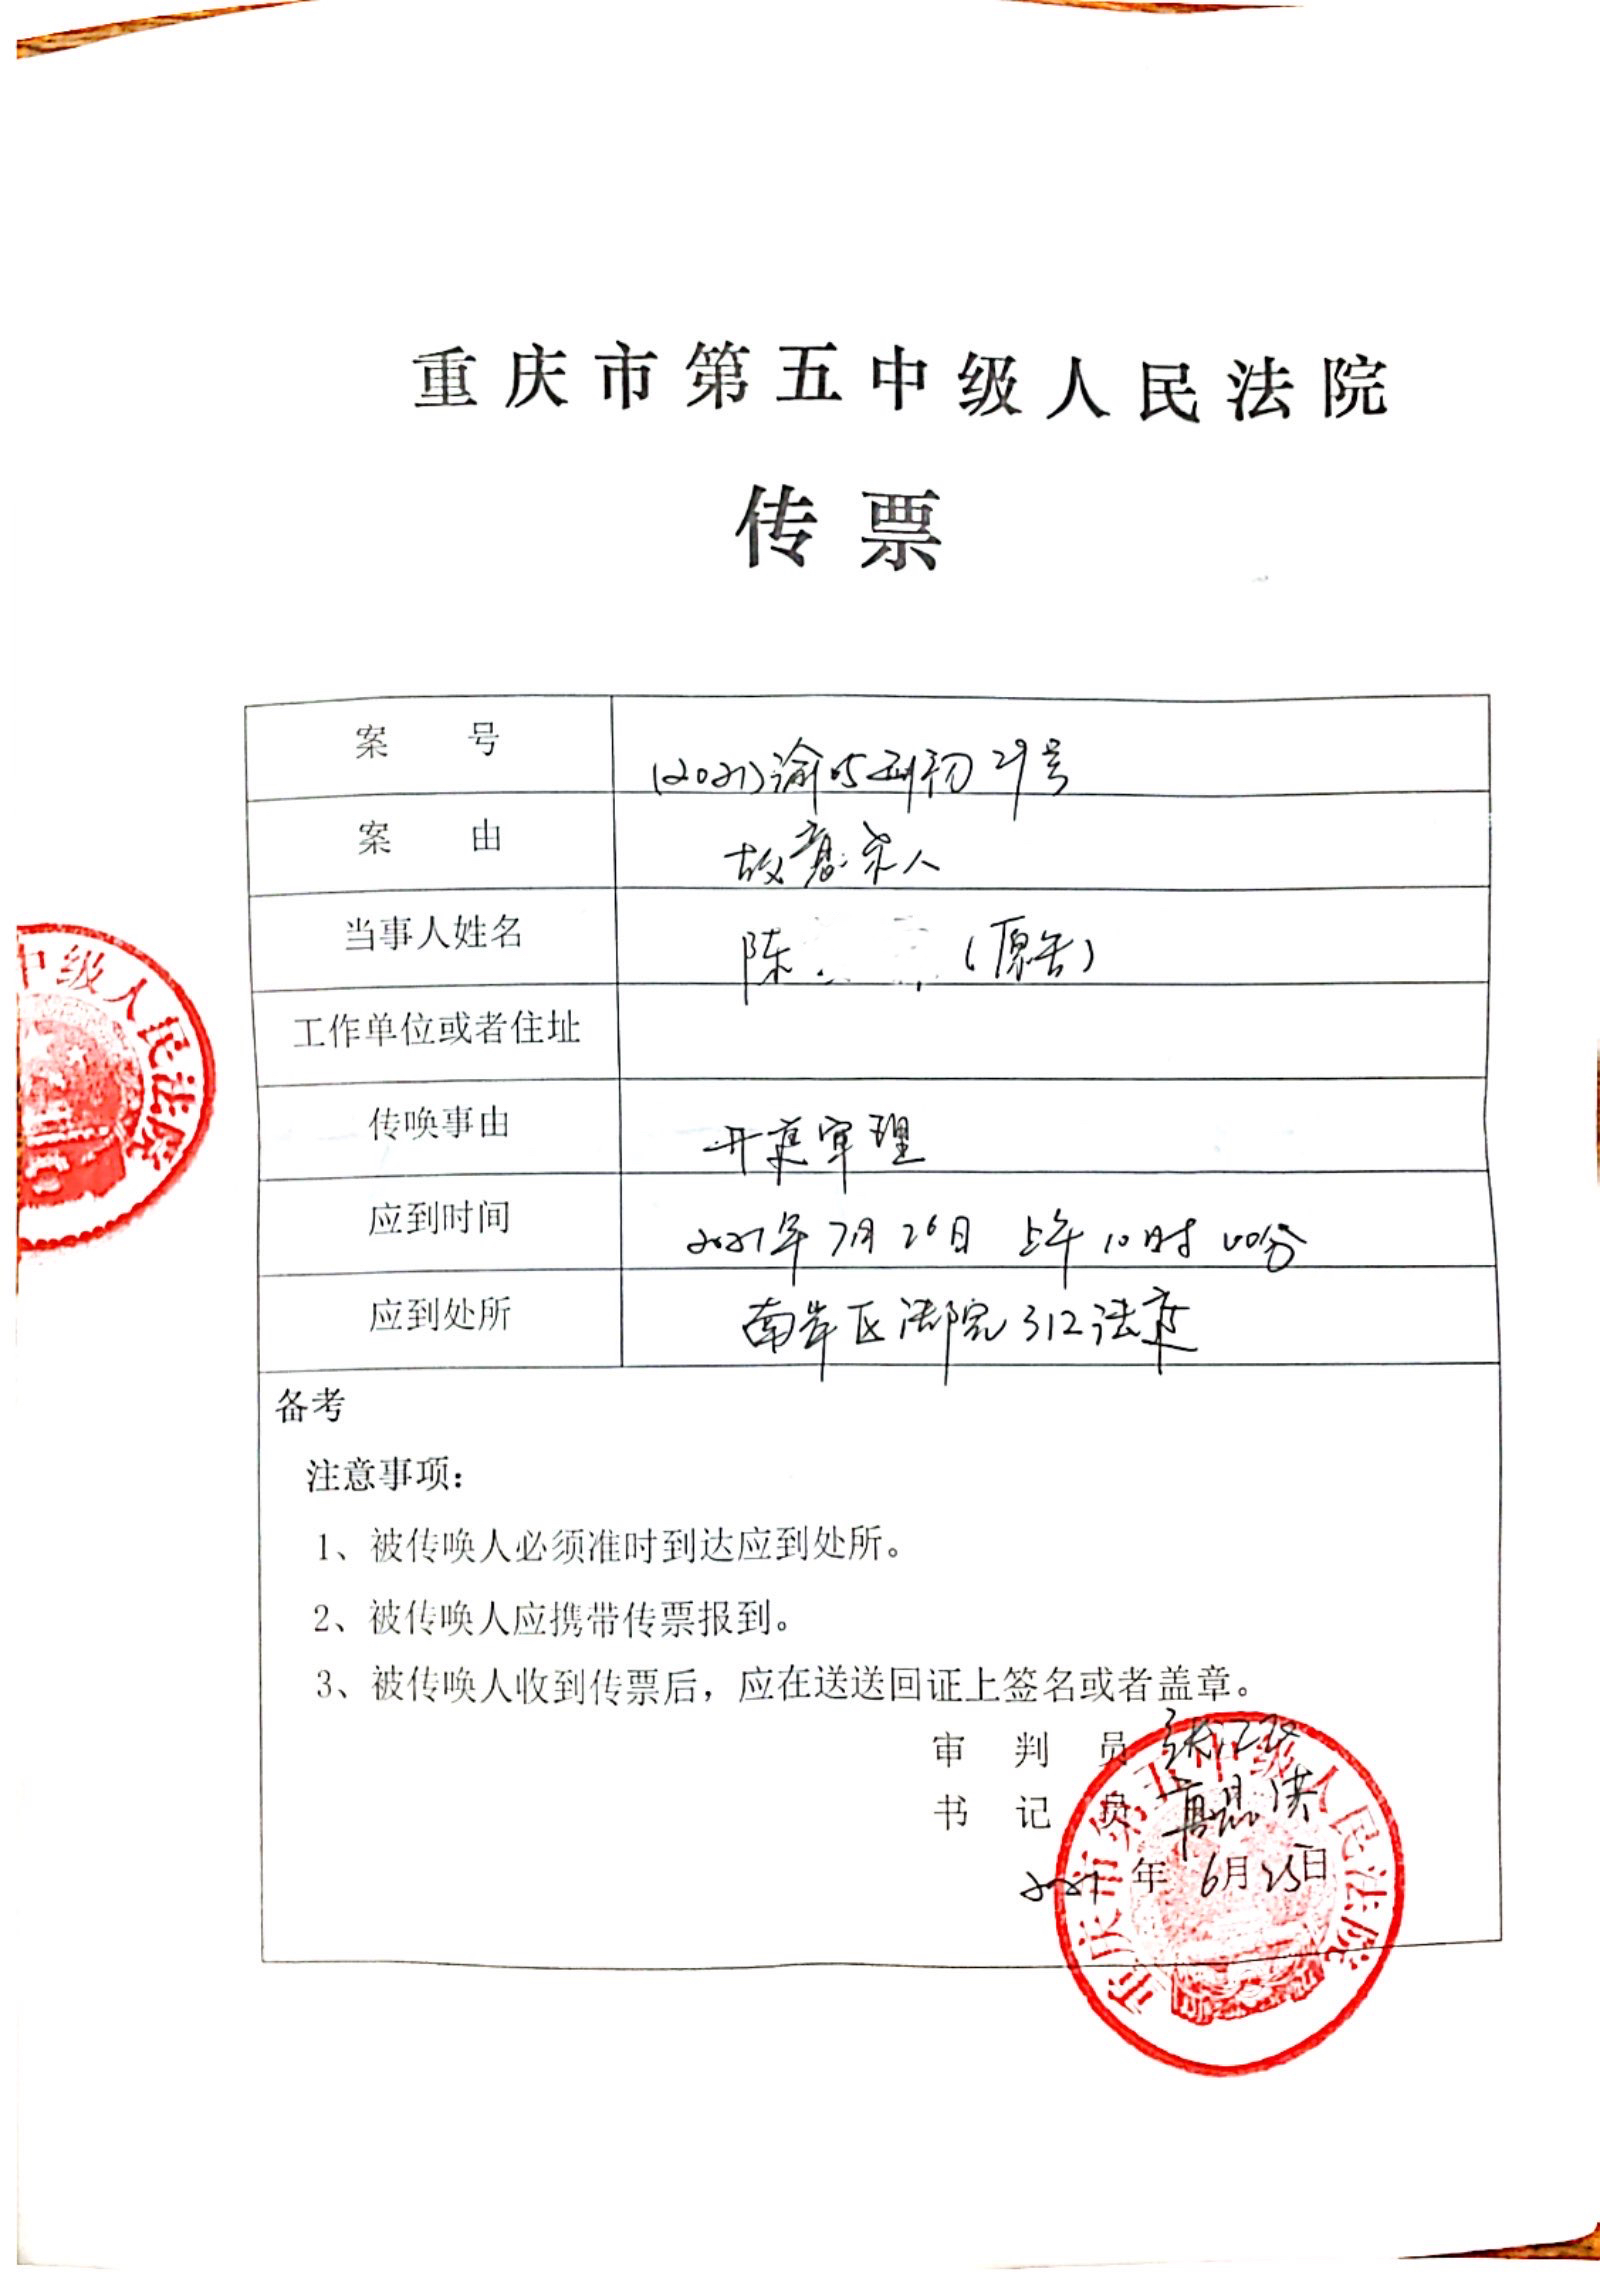 重庆市五中院传票显示,该院将于本月26日审理张某,叶某尘故意杀人案.